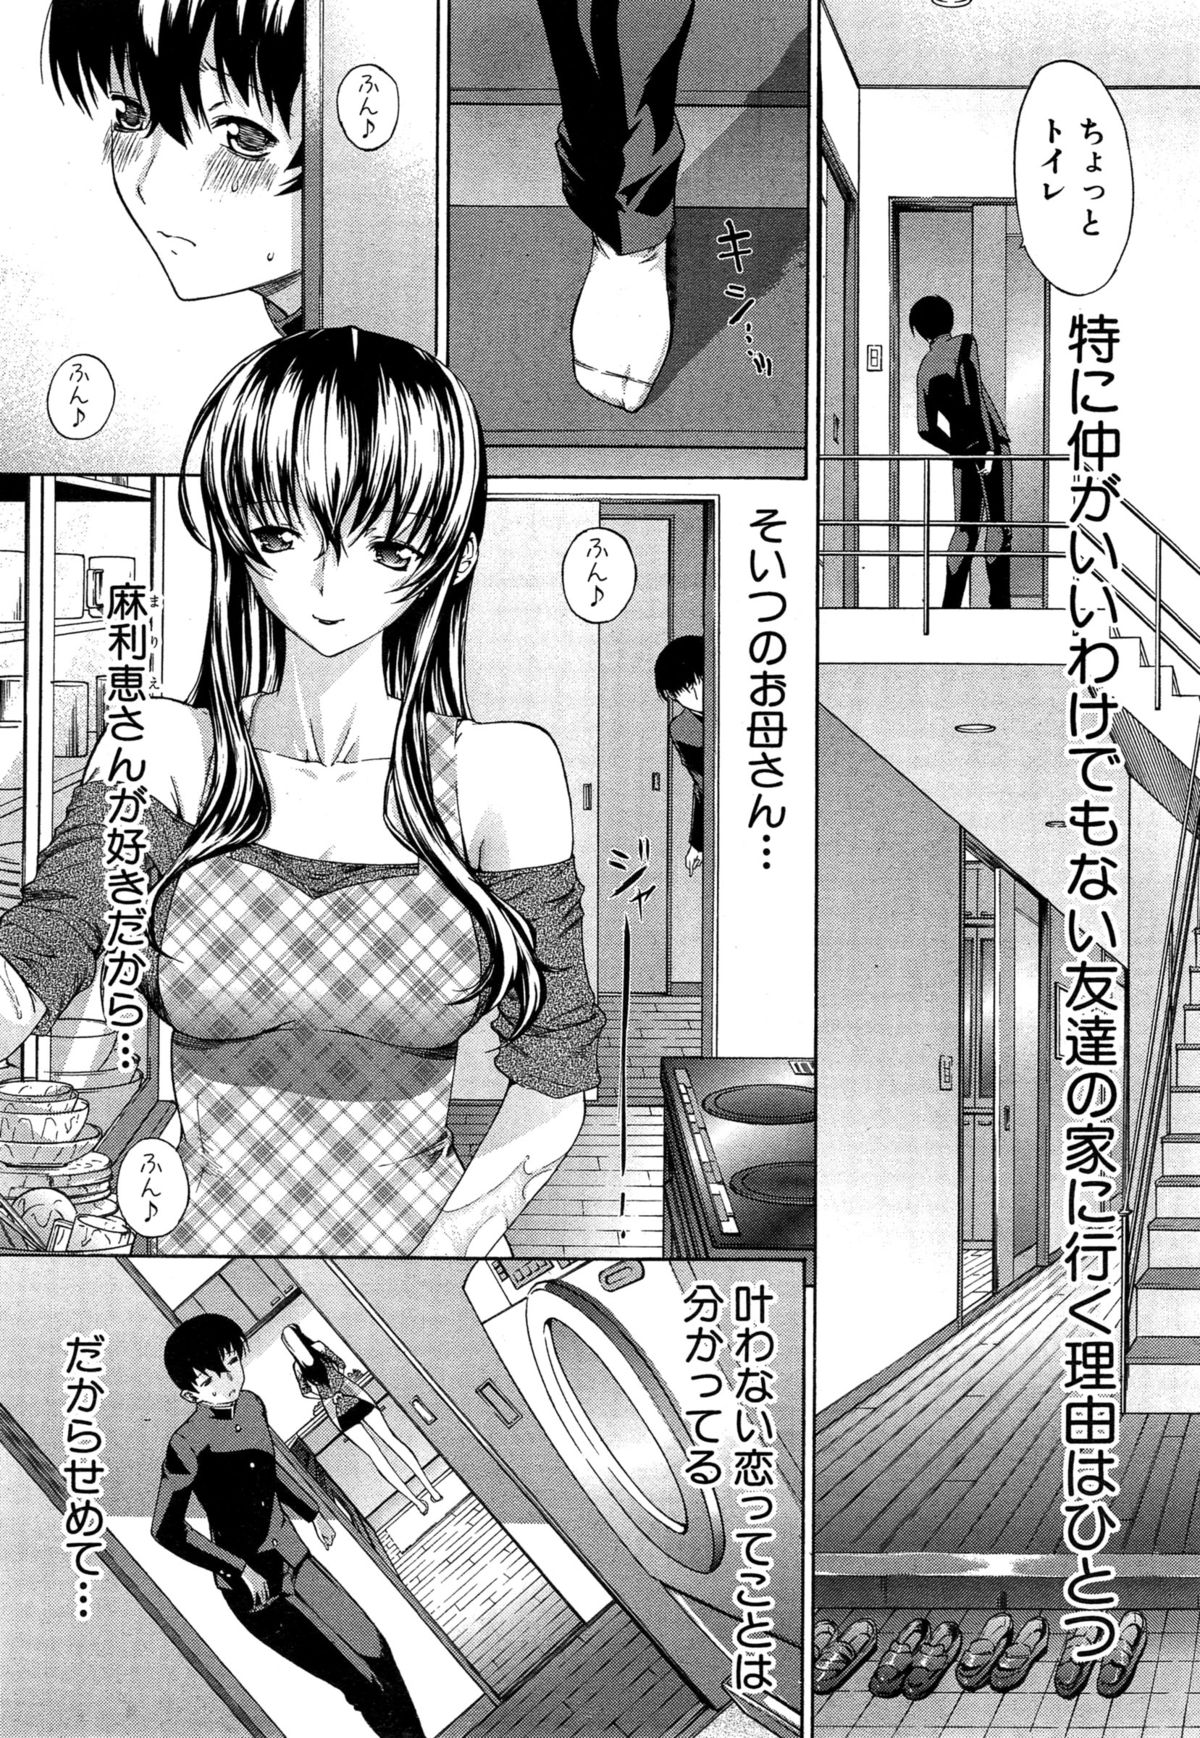 [Kino Hitoshi] Boku no Marie-san Ch. 1-2 page 3 full